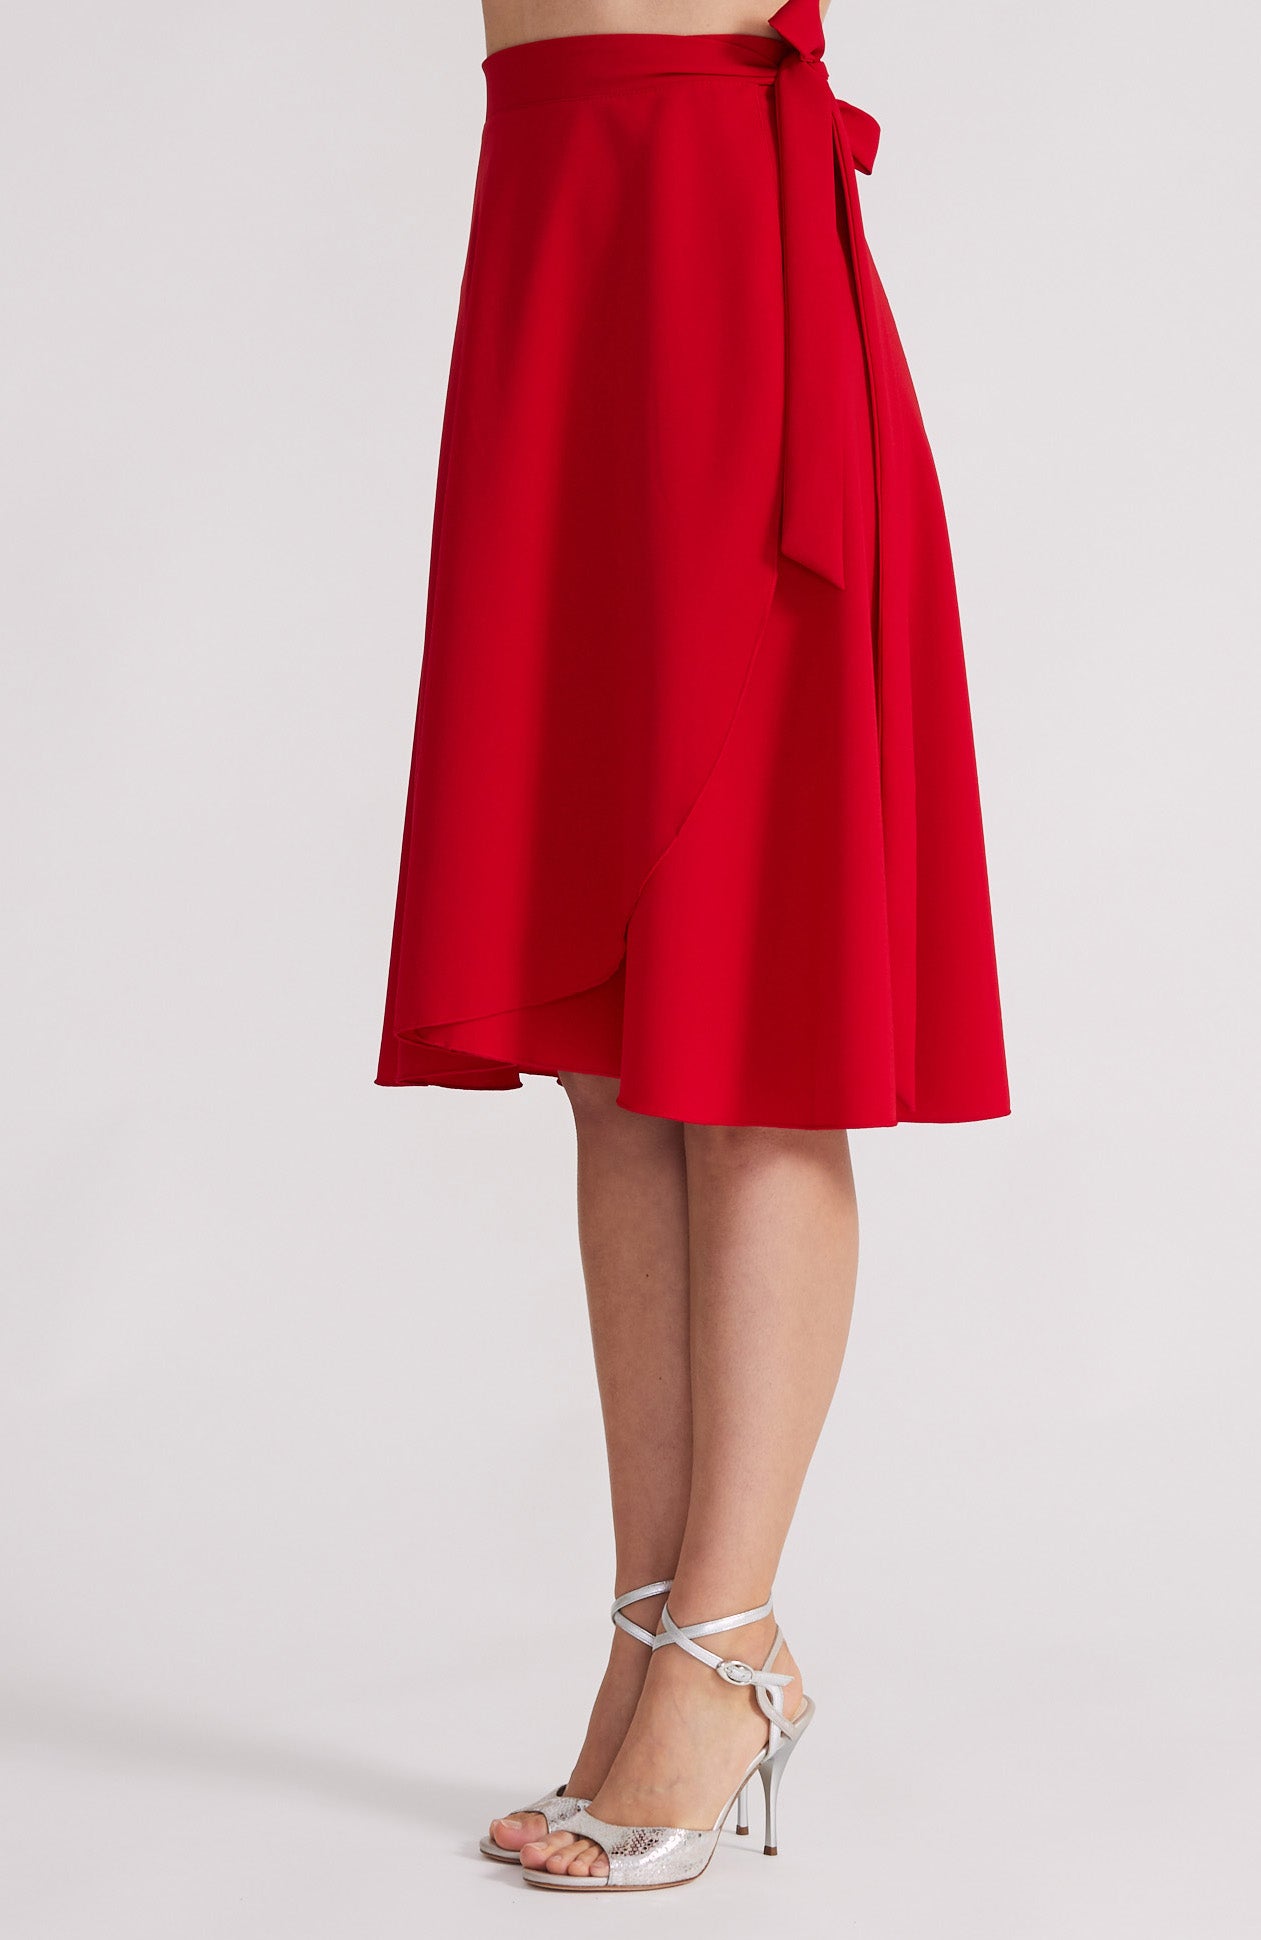 red tango skirt